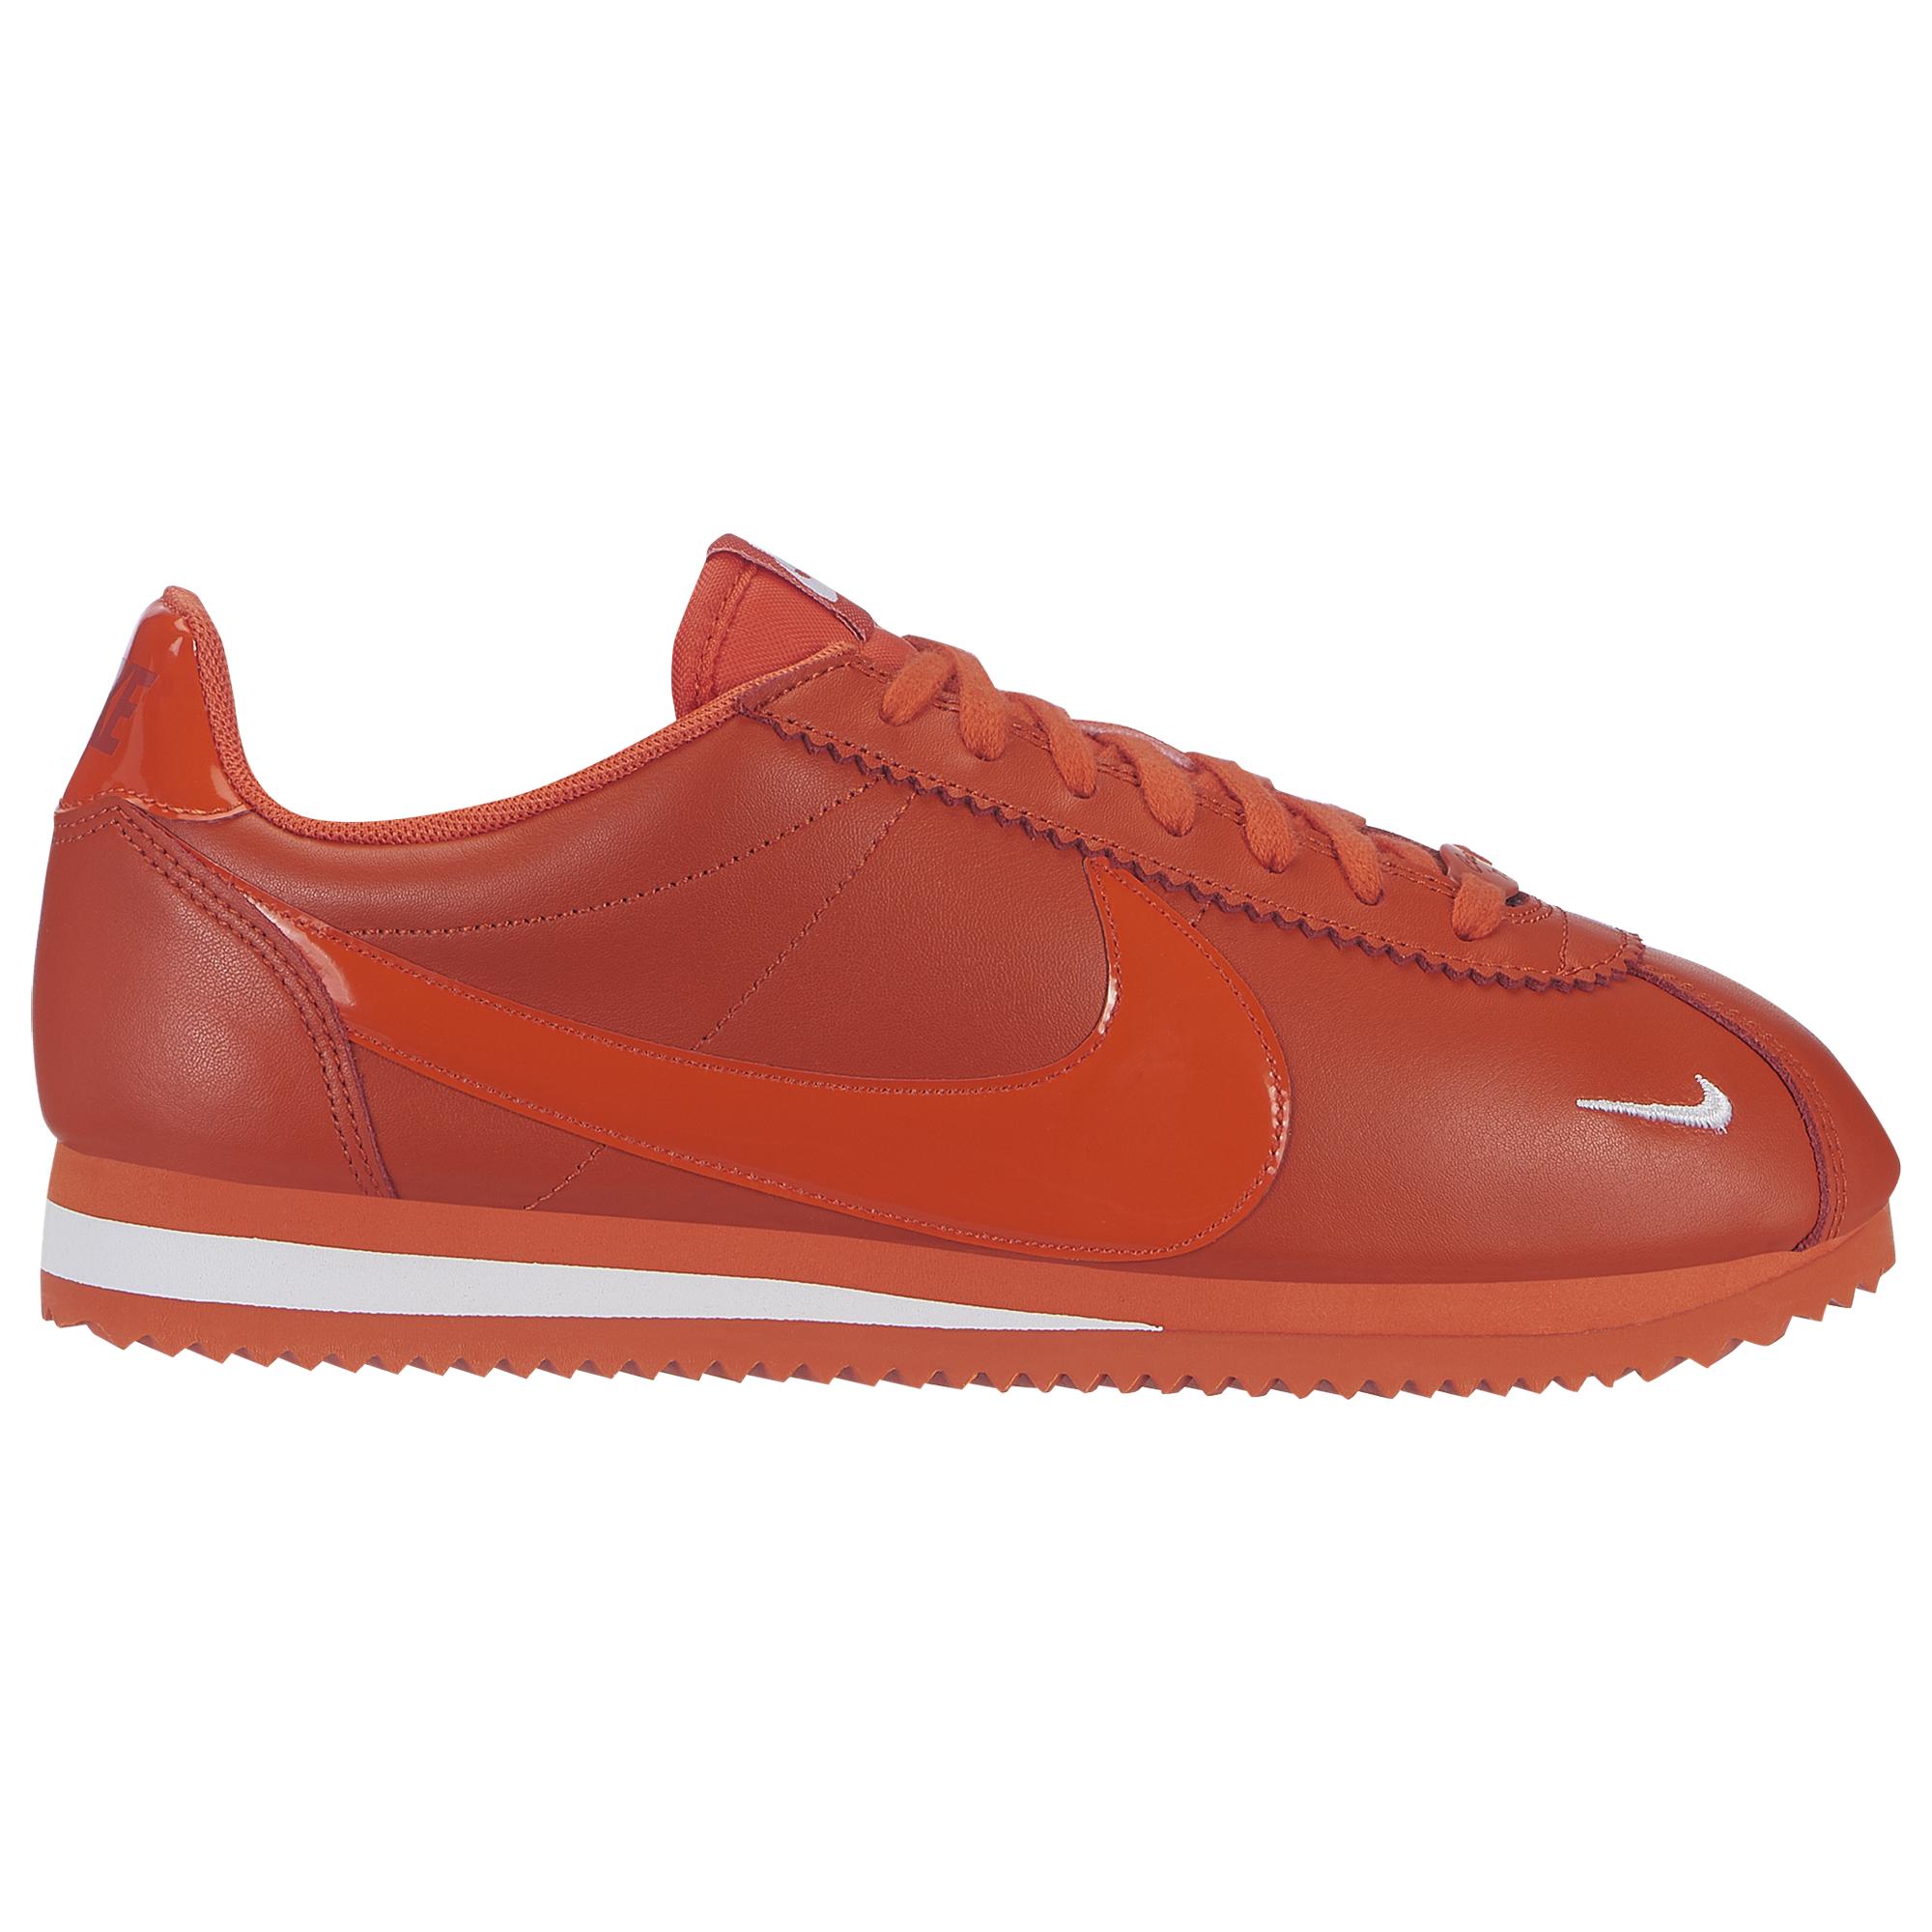 orange cortez shoes